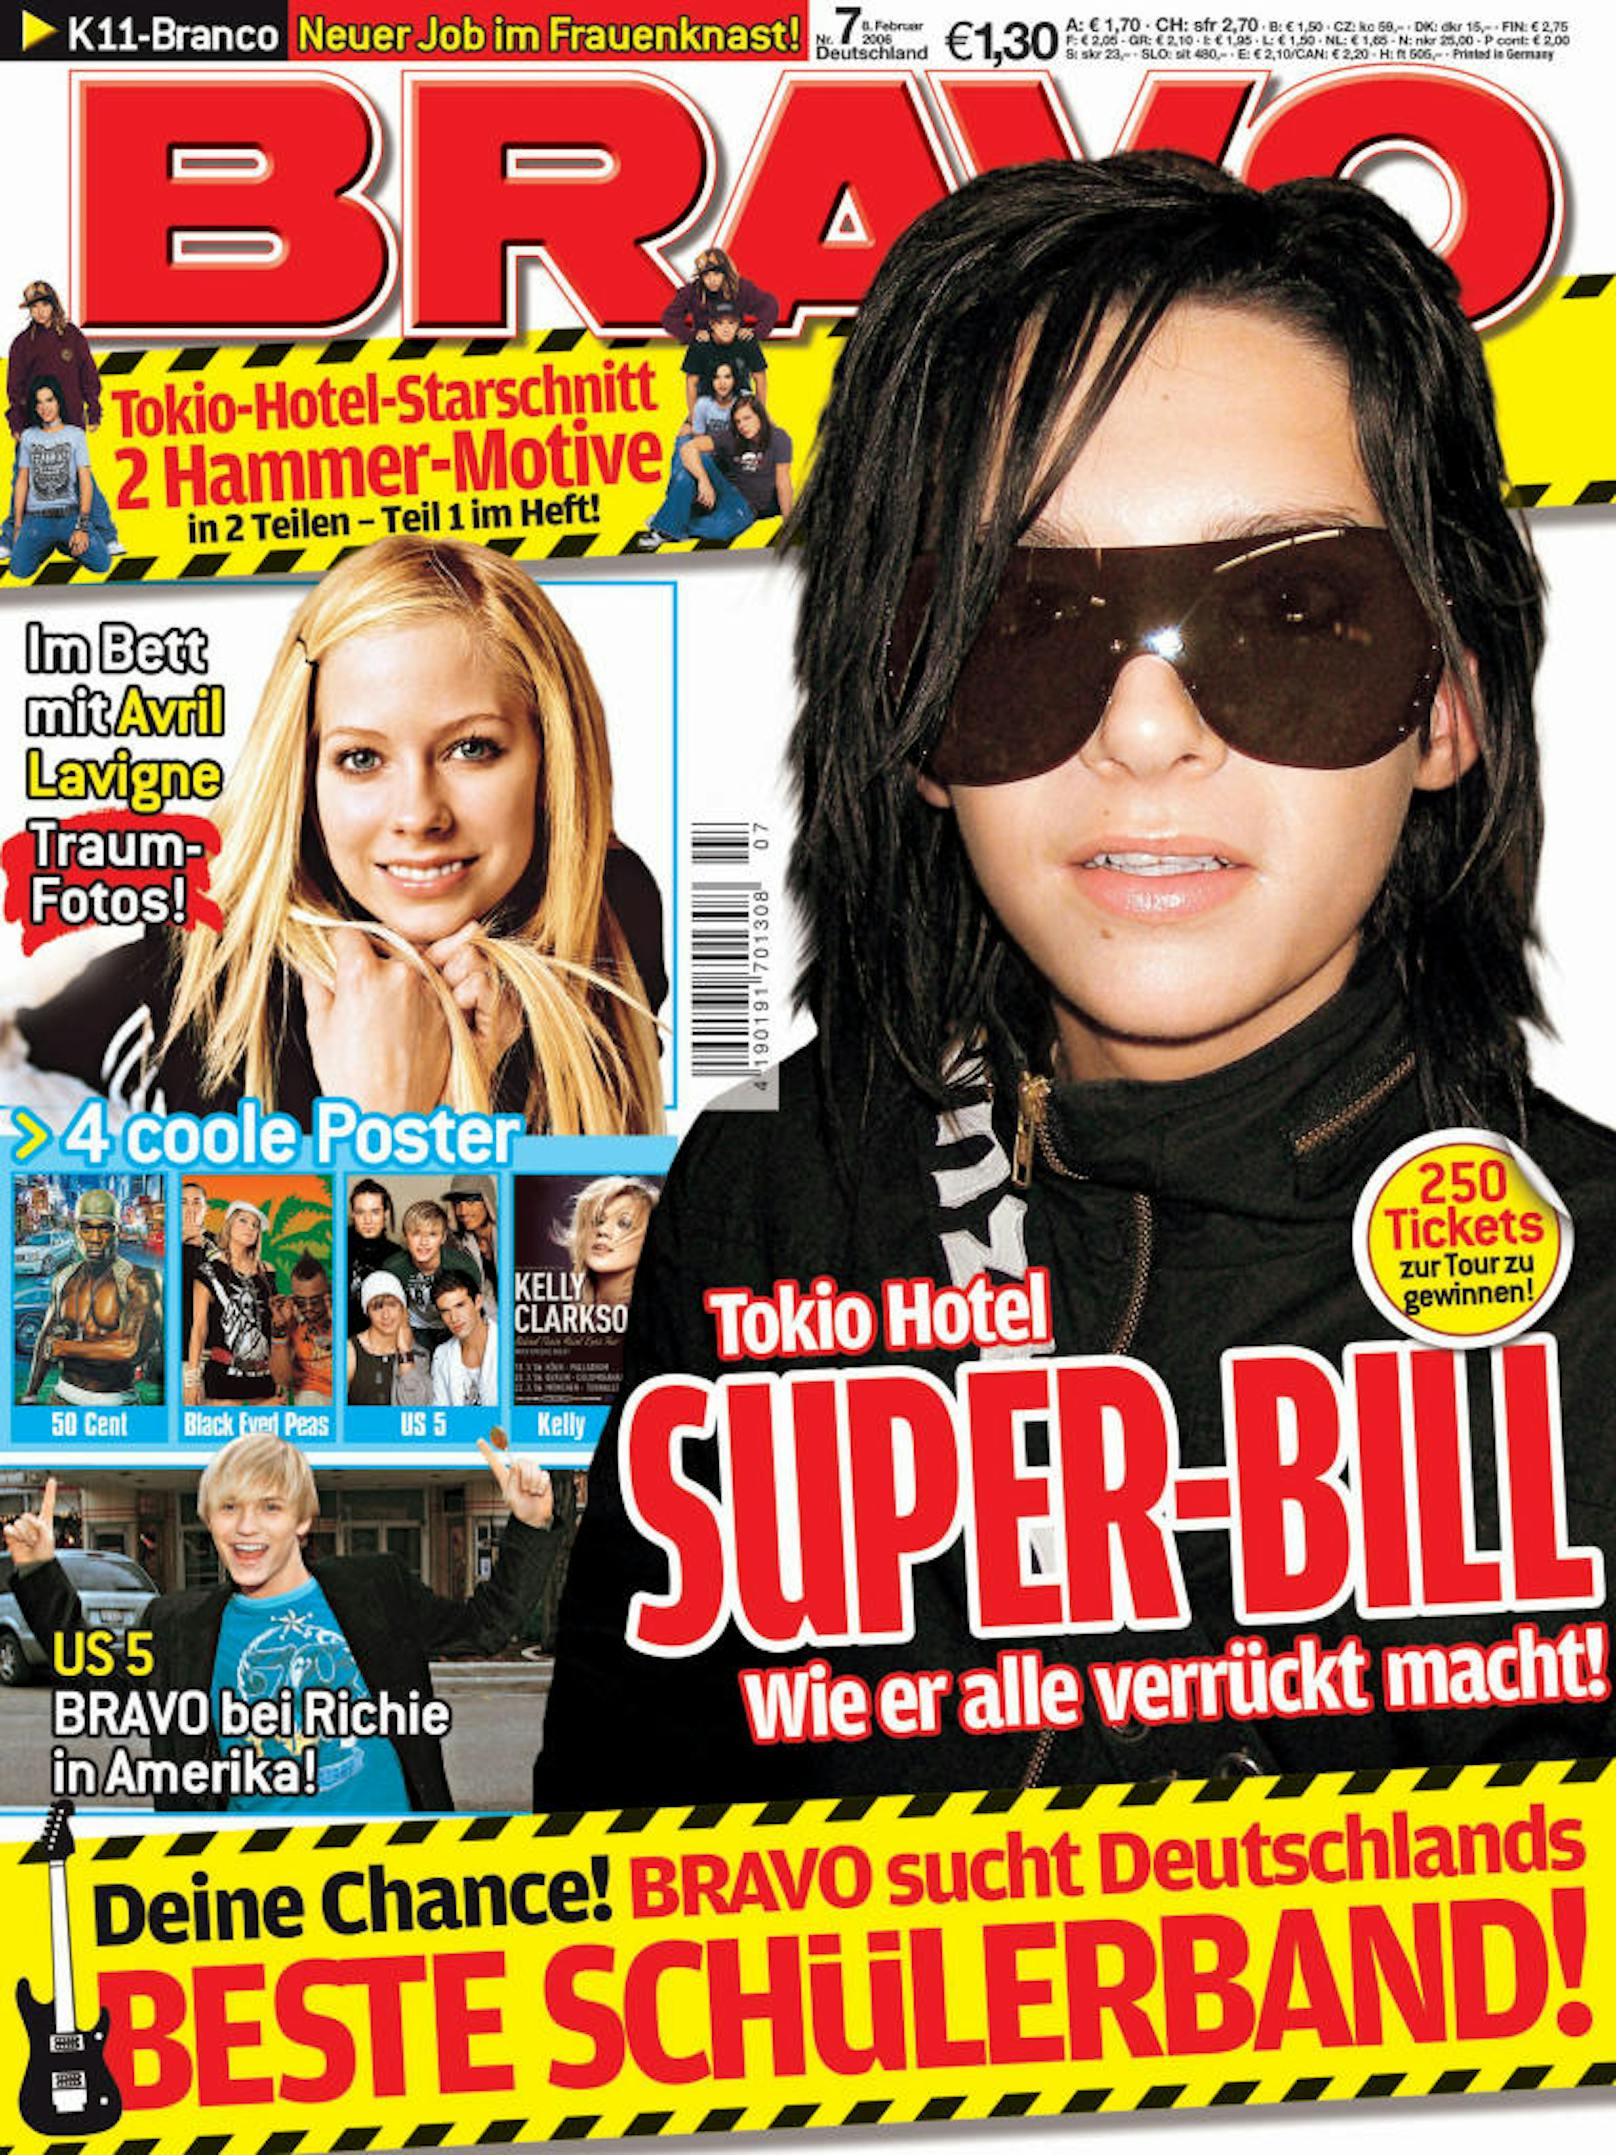 Da war noch Bill das bekannteste Gesicht von "Tokio Hotel" - jetzt hat ihm Bruder und "Mister Heidi Klum" Tom den Rang wohl abgelaufen